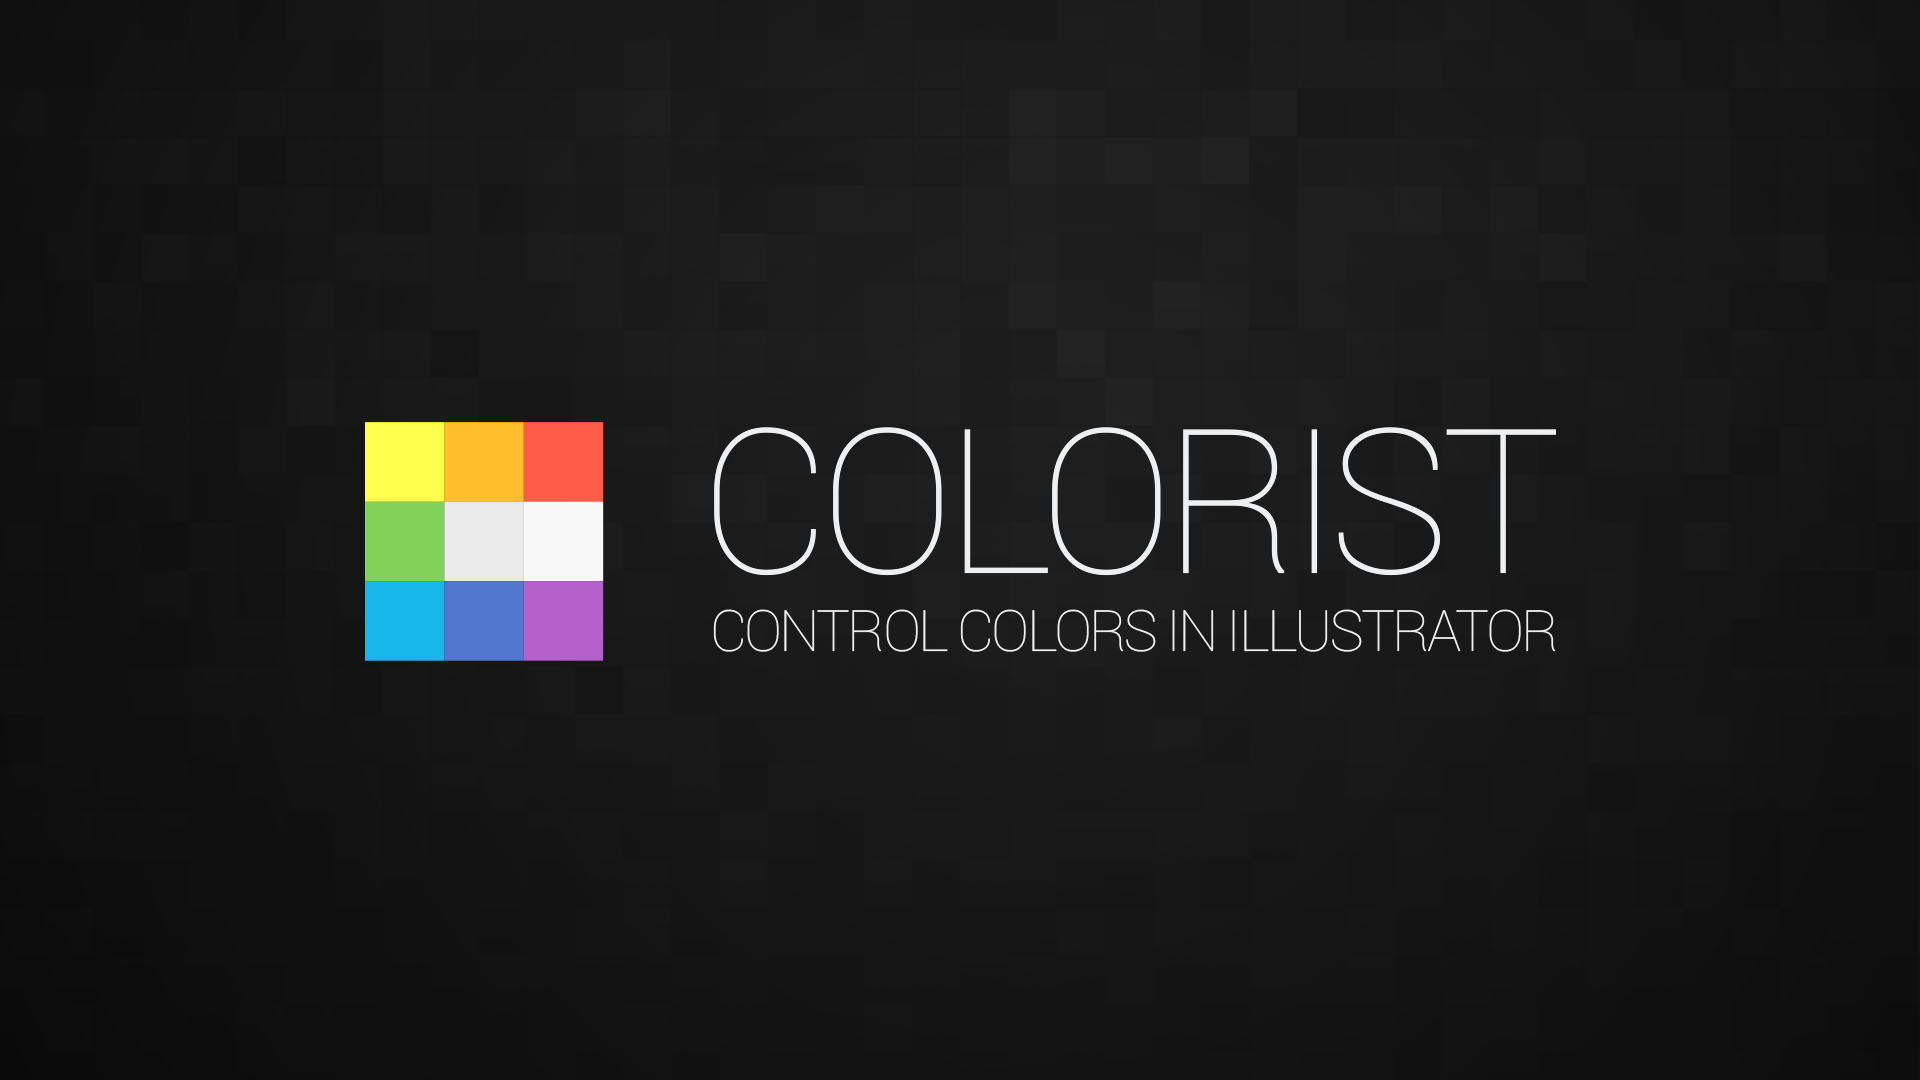 Colorist